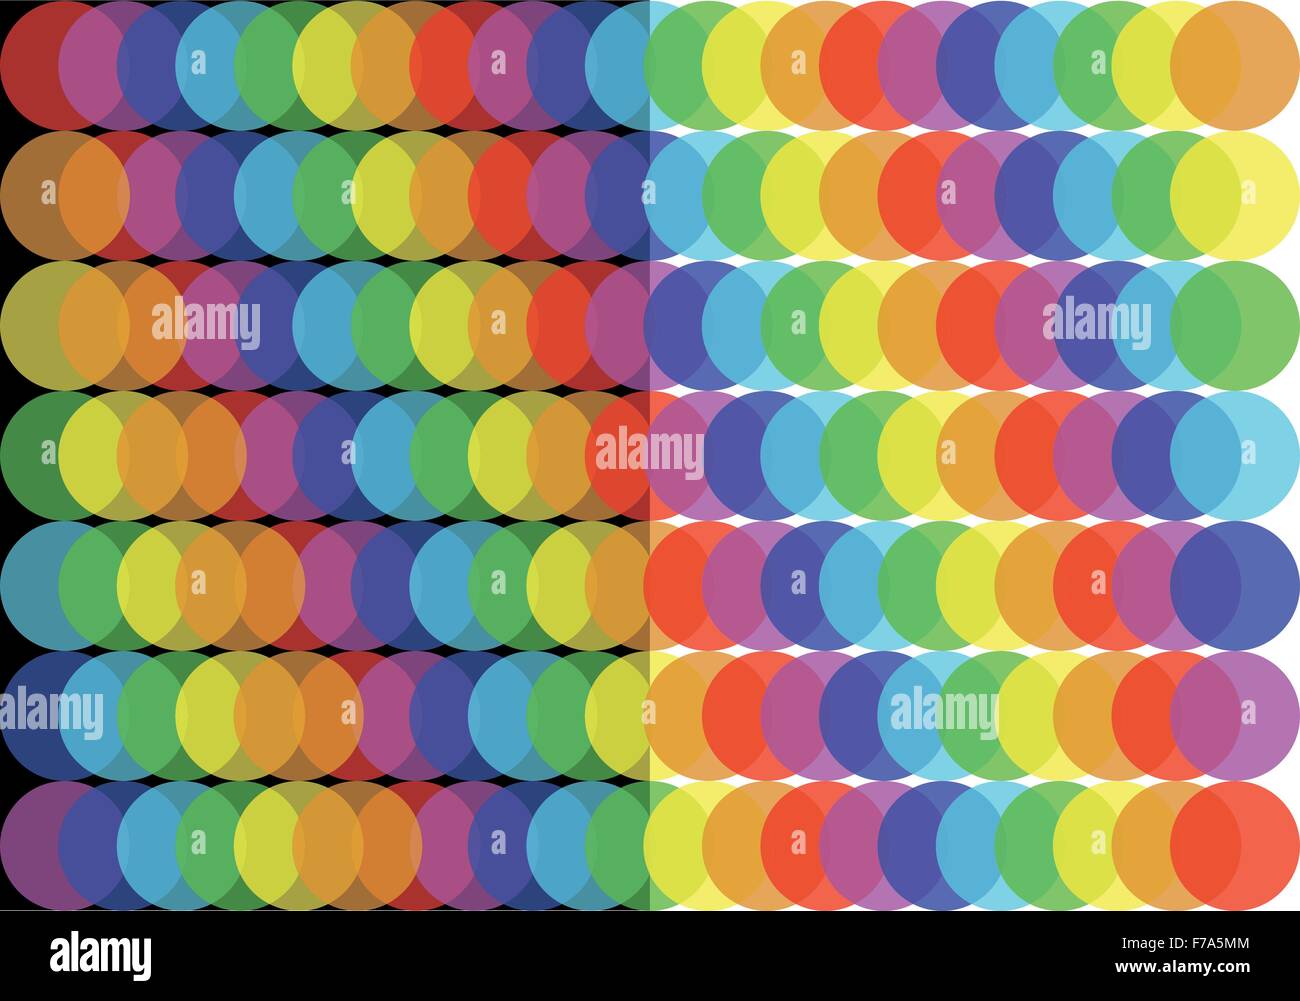 Rainbow balls vector background Stock Vector